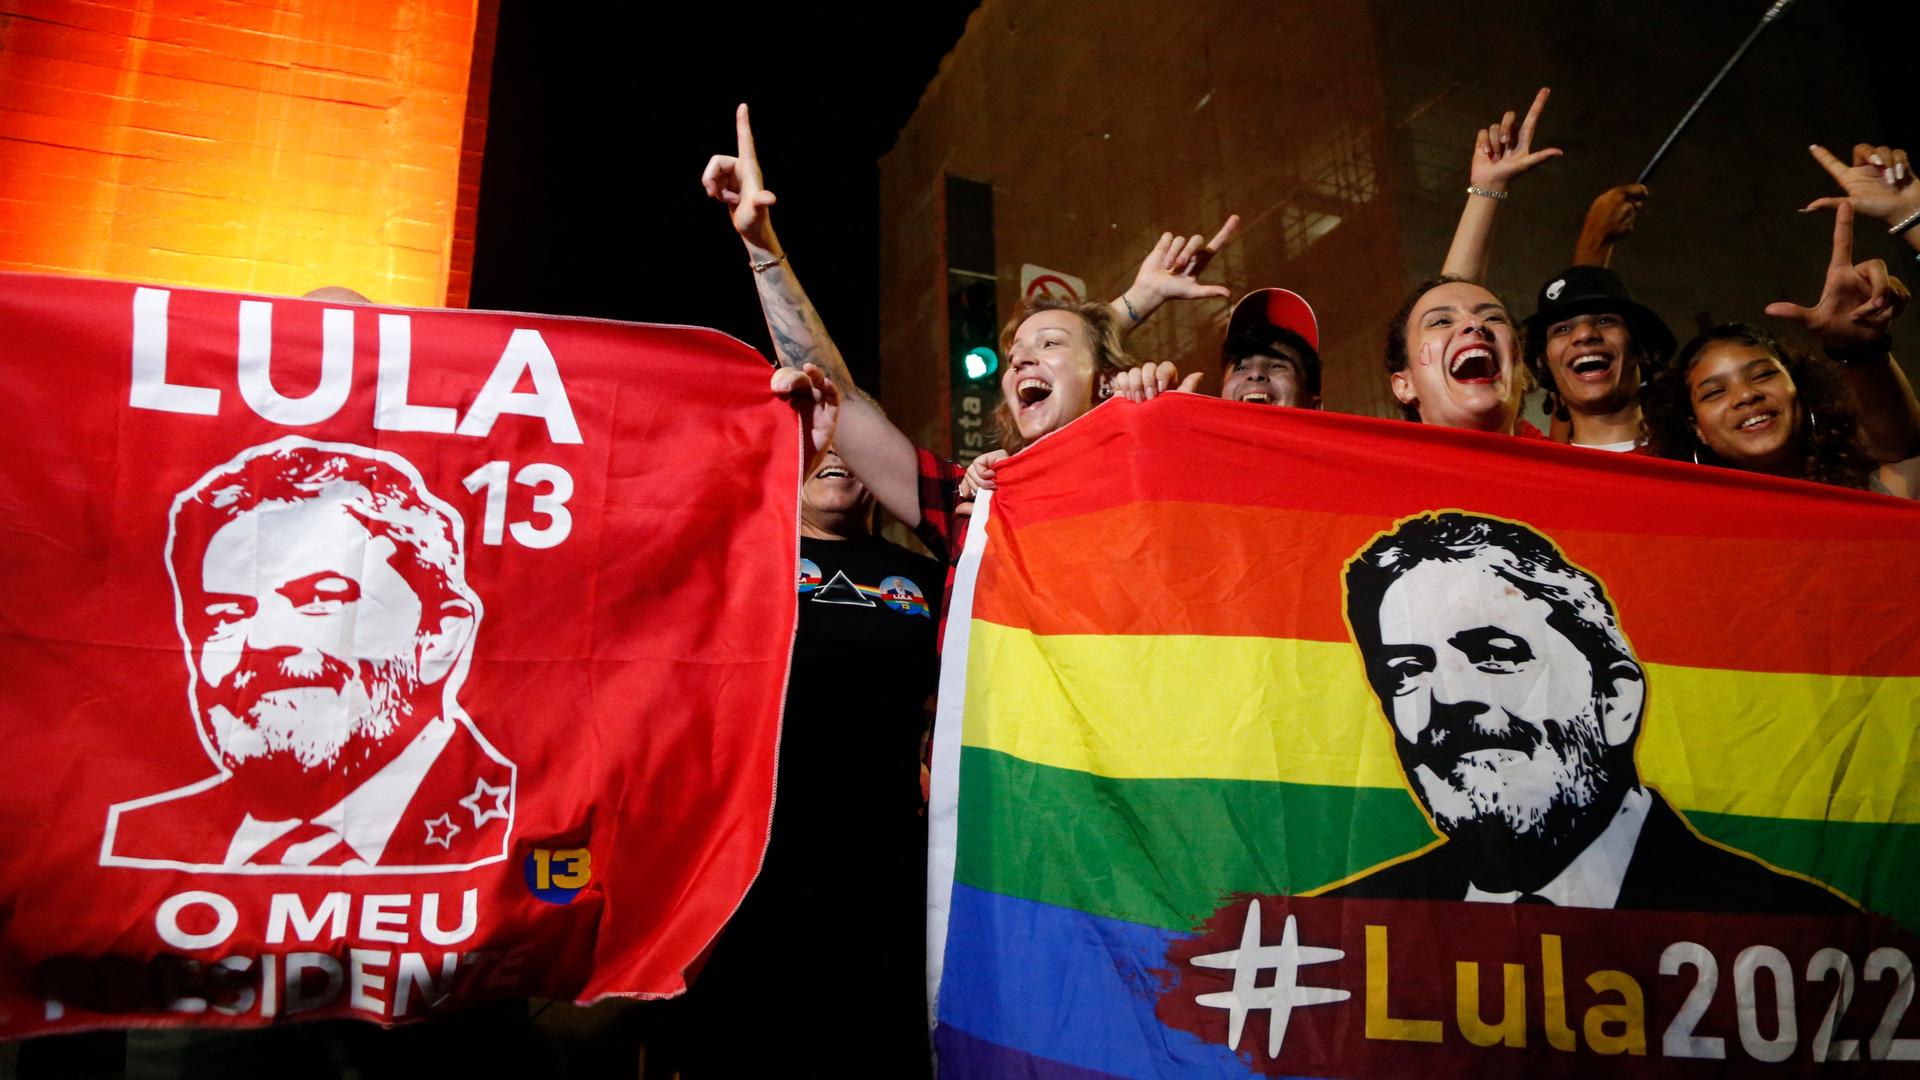 Zahlreiche Menschen feiern den Wahlsieg Lula da Silvas in Sao Paolo, Brasilien. Es ist dunkel, sie halten zwei bunte Flaggen mit dem Portrait Lulas hoch und sind fröhlich.